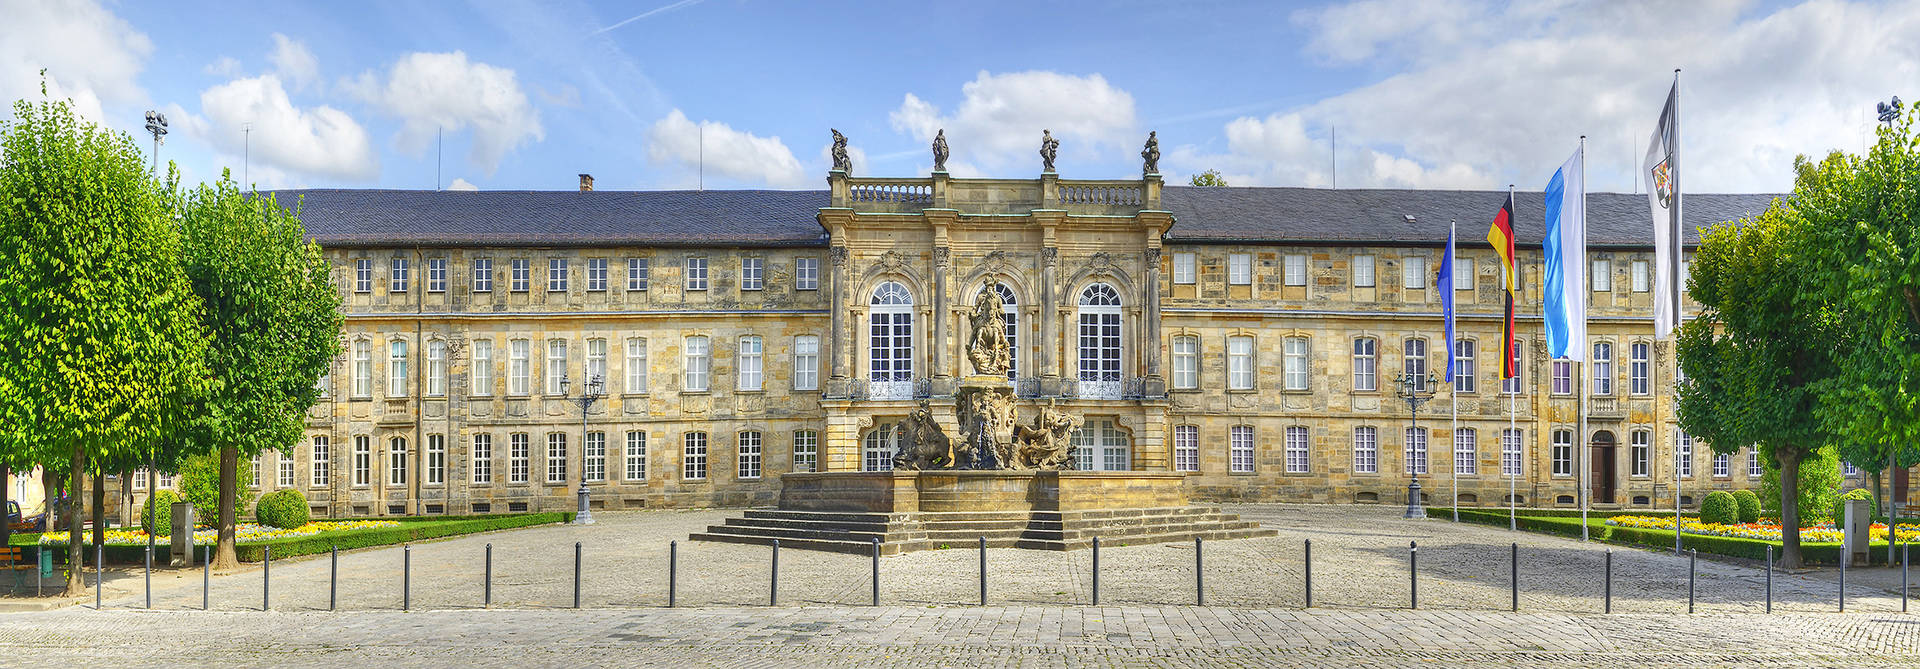 Neues Schloss - H4 Hotel Residenzschloss Bayreuth - Offizielle Webseite